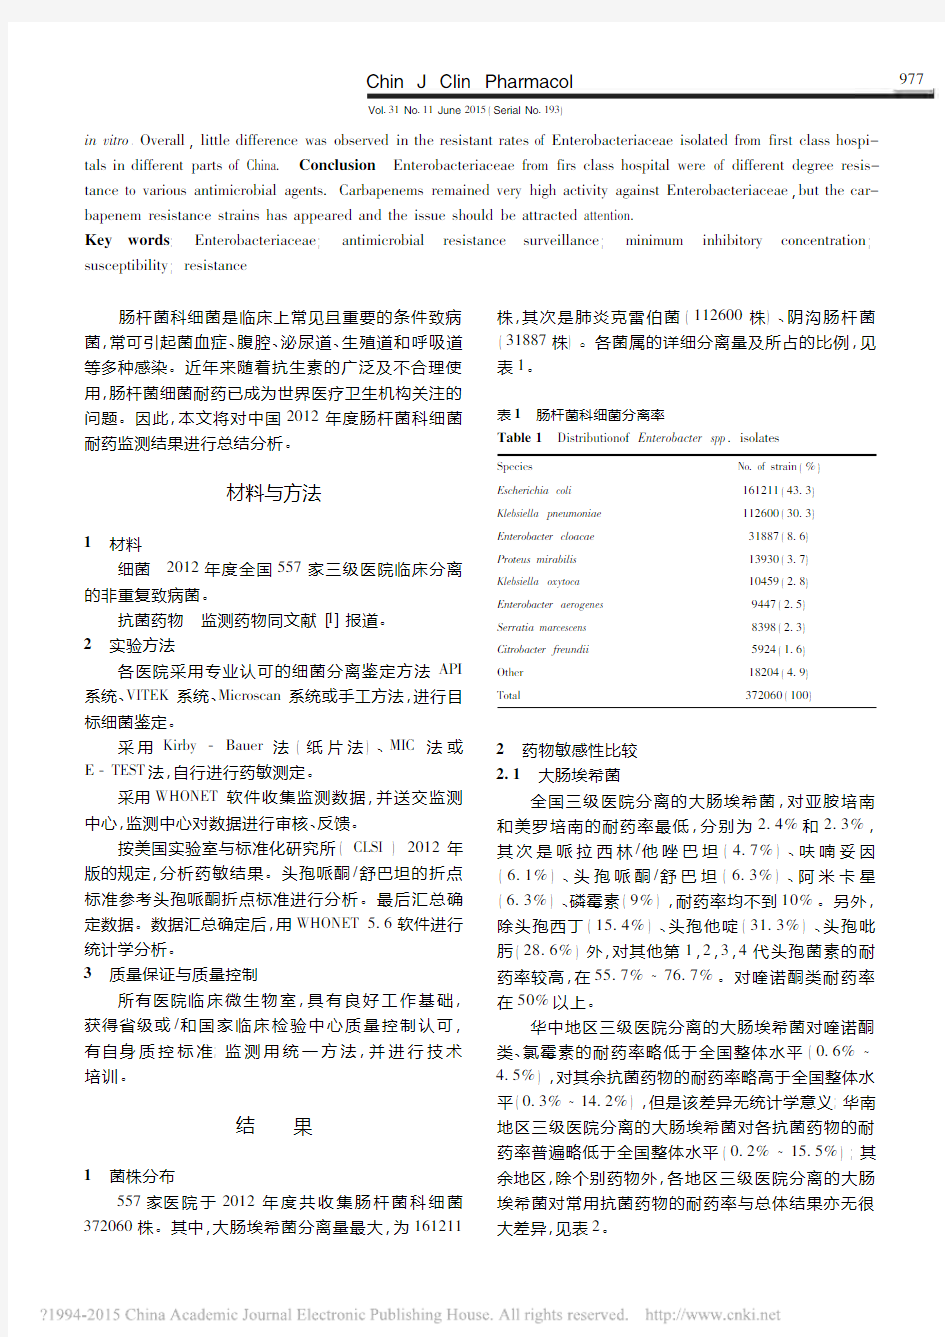 2013年中国CHINET细菌耐药性监测_胡付品 (1)